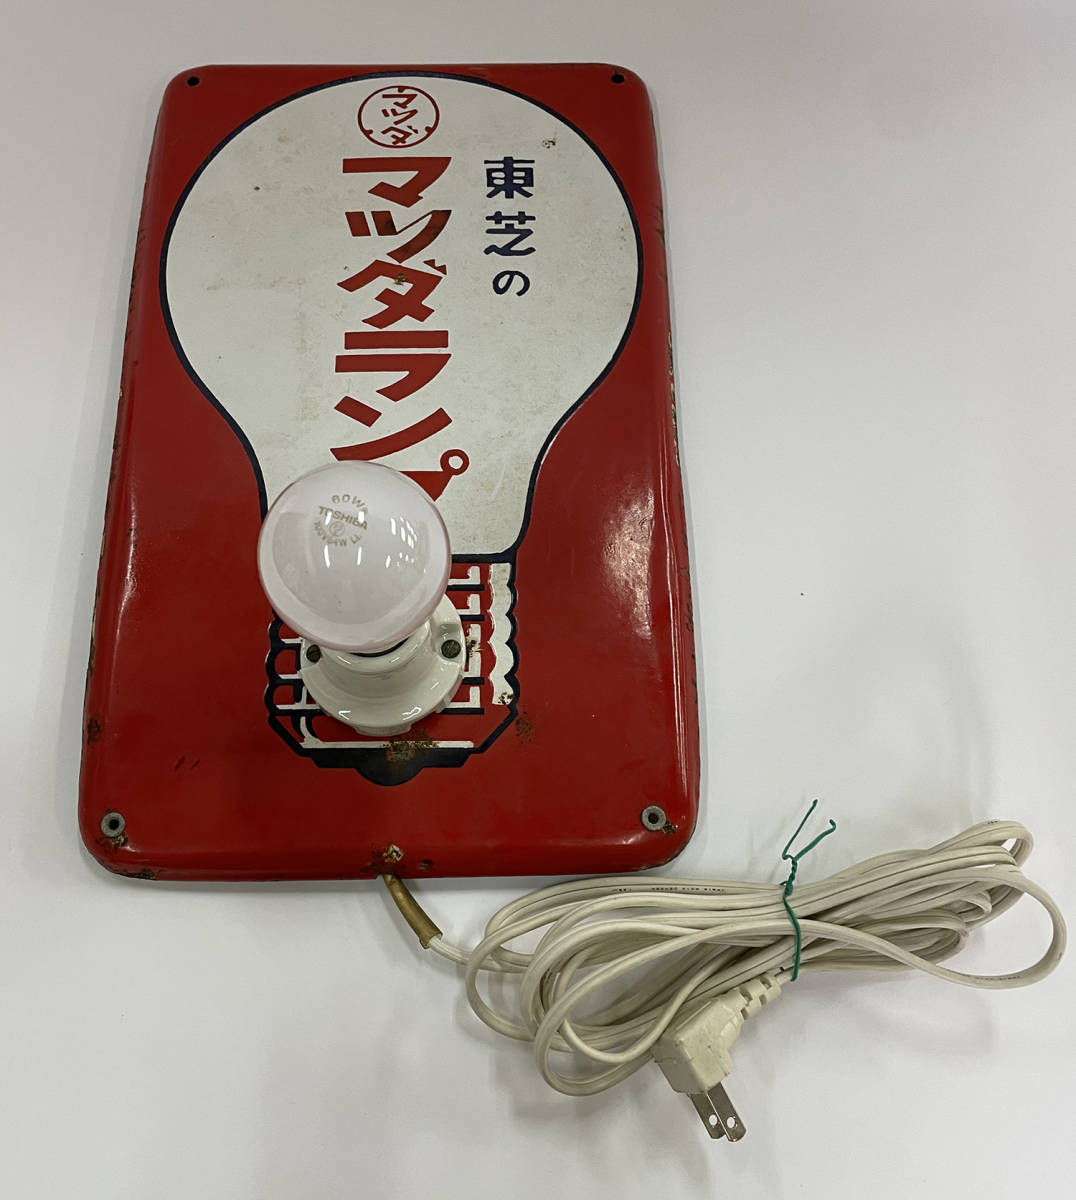 昭和レトロ」東芝のマツダランプ ホーロー看板 電球テスト用(看板